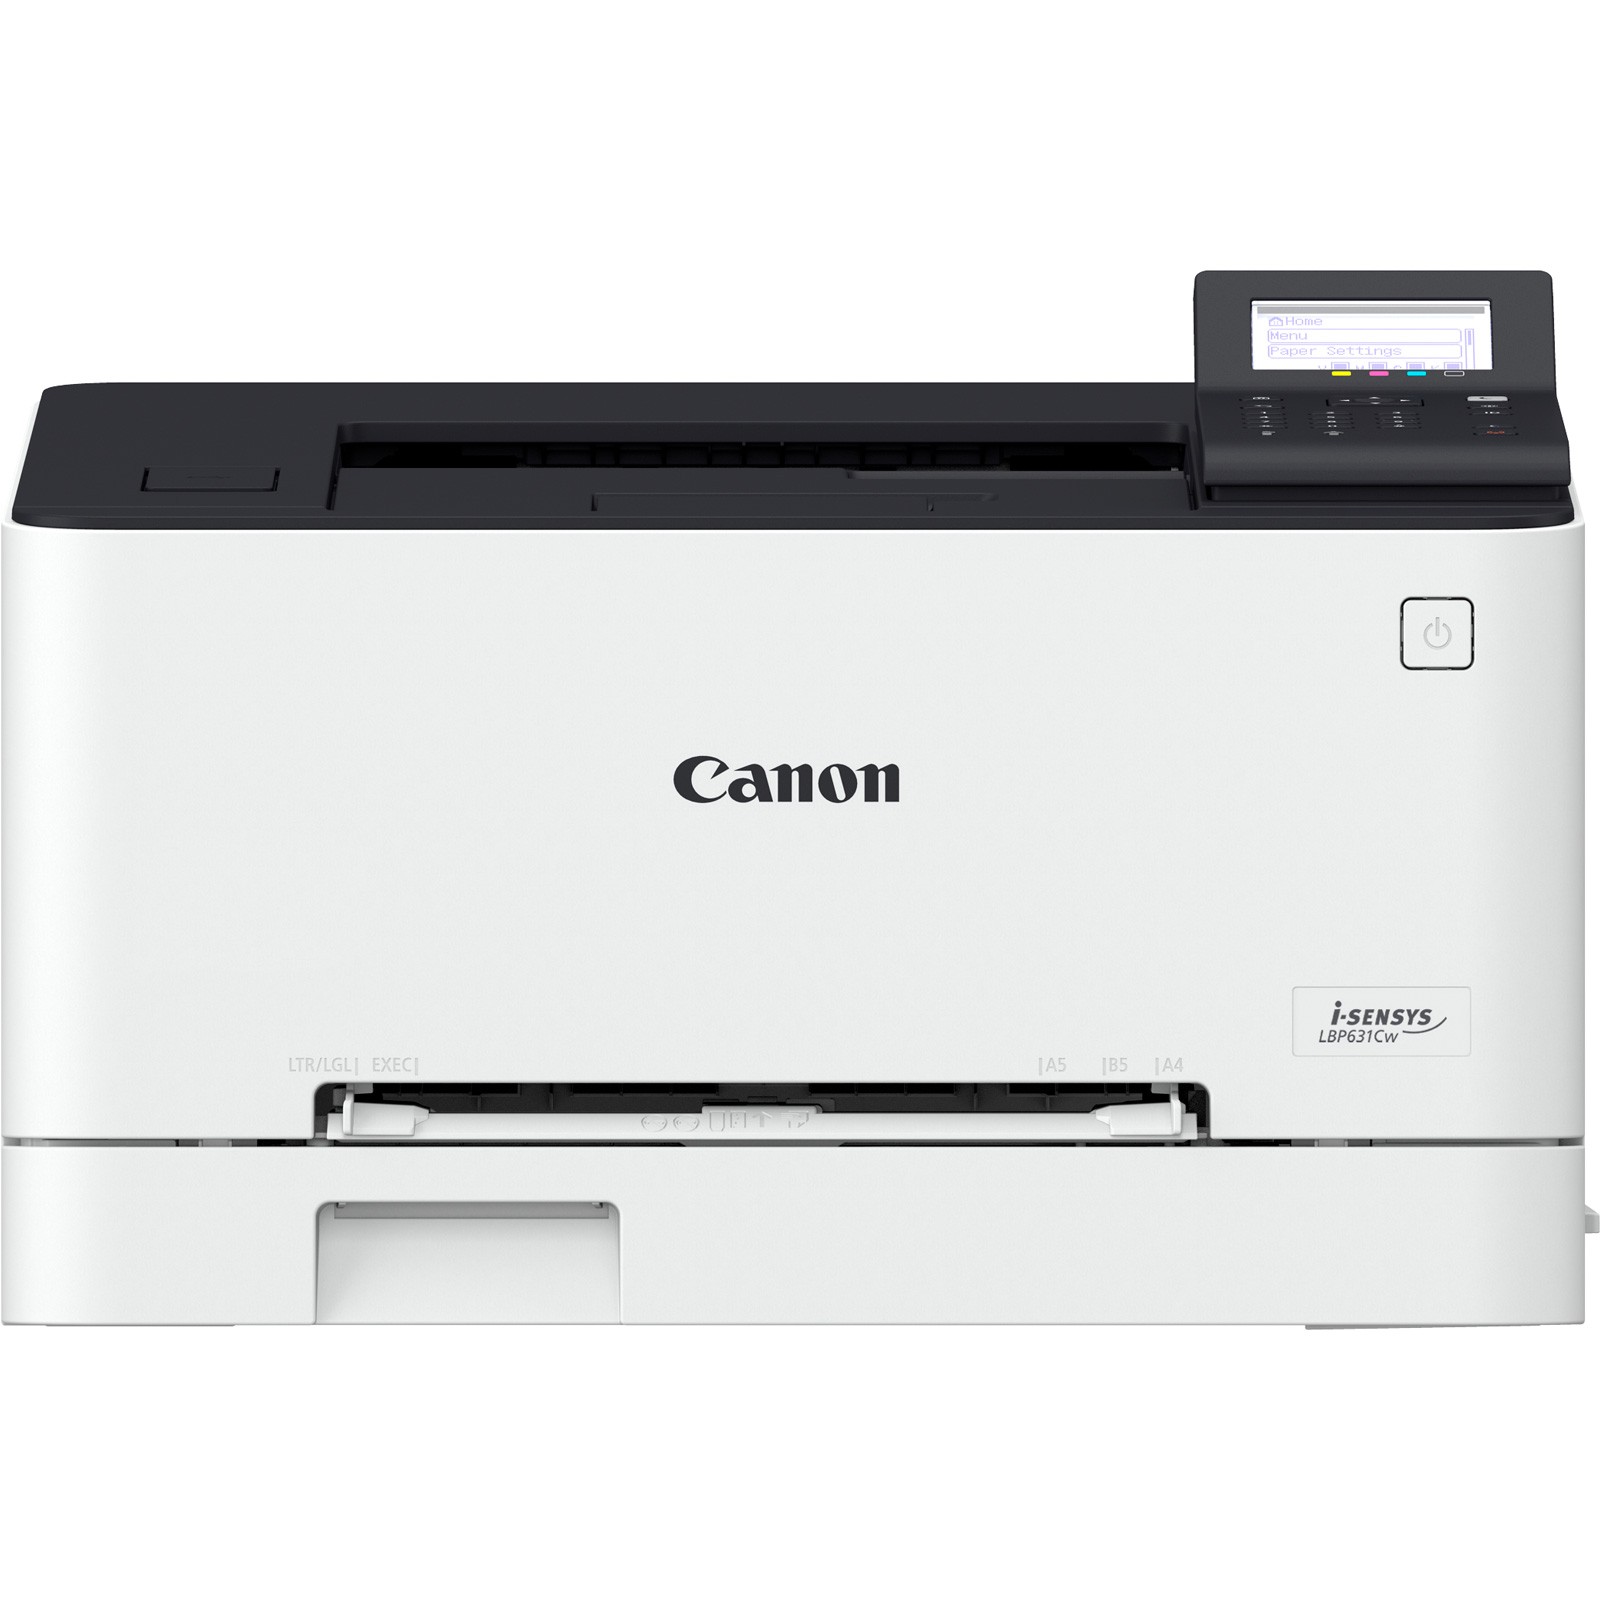 Canon i-SENSYS LBP631Cw laserprinter